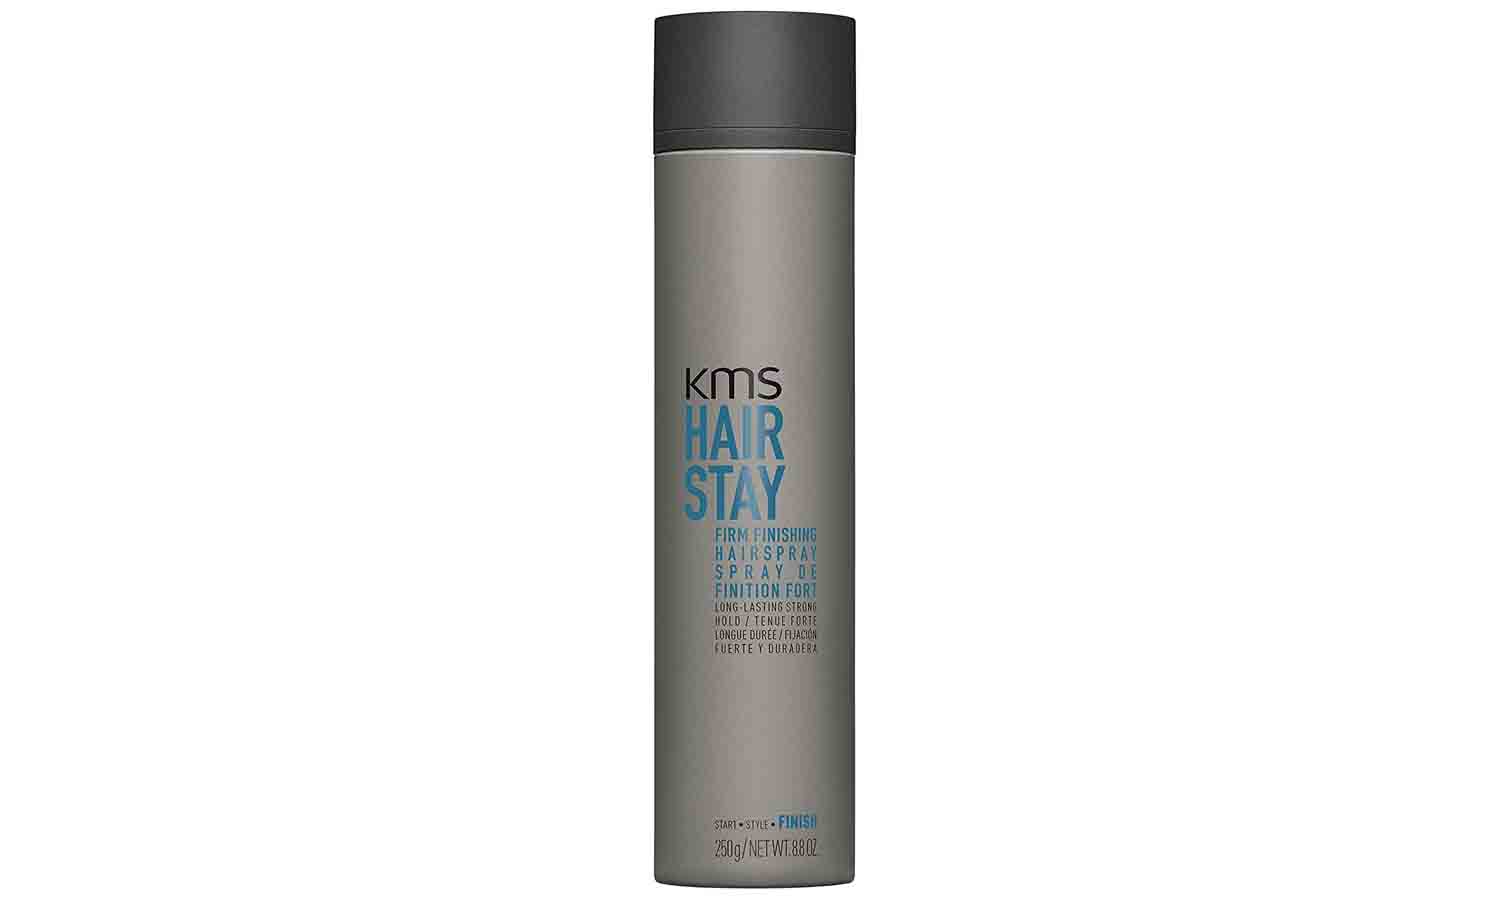 KMS Hair Stay Hairspray